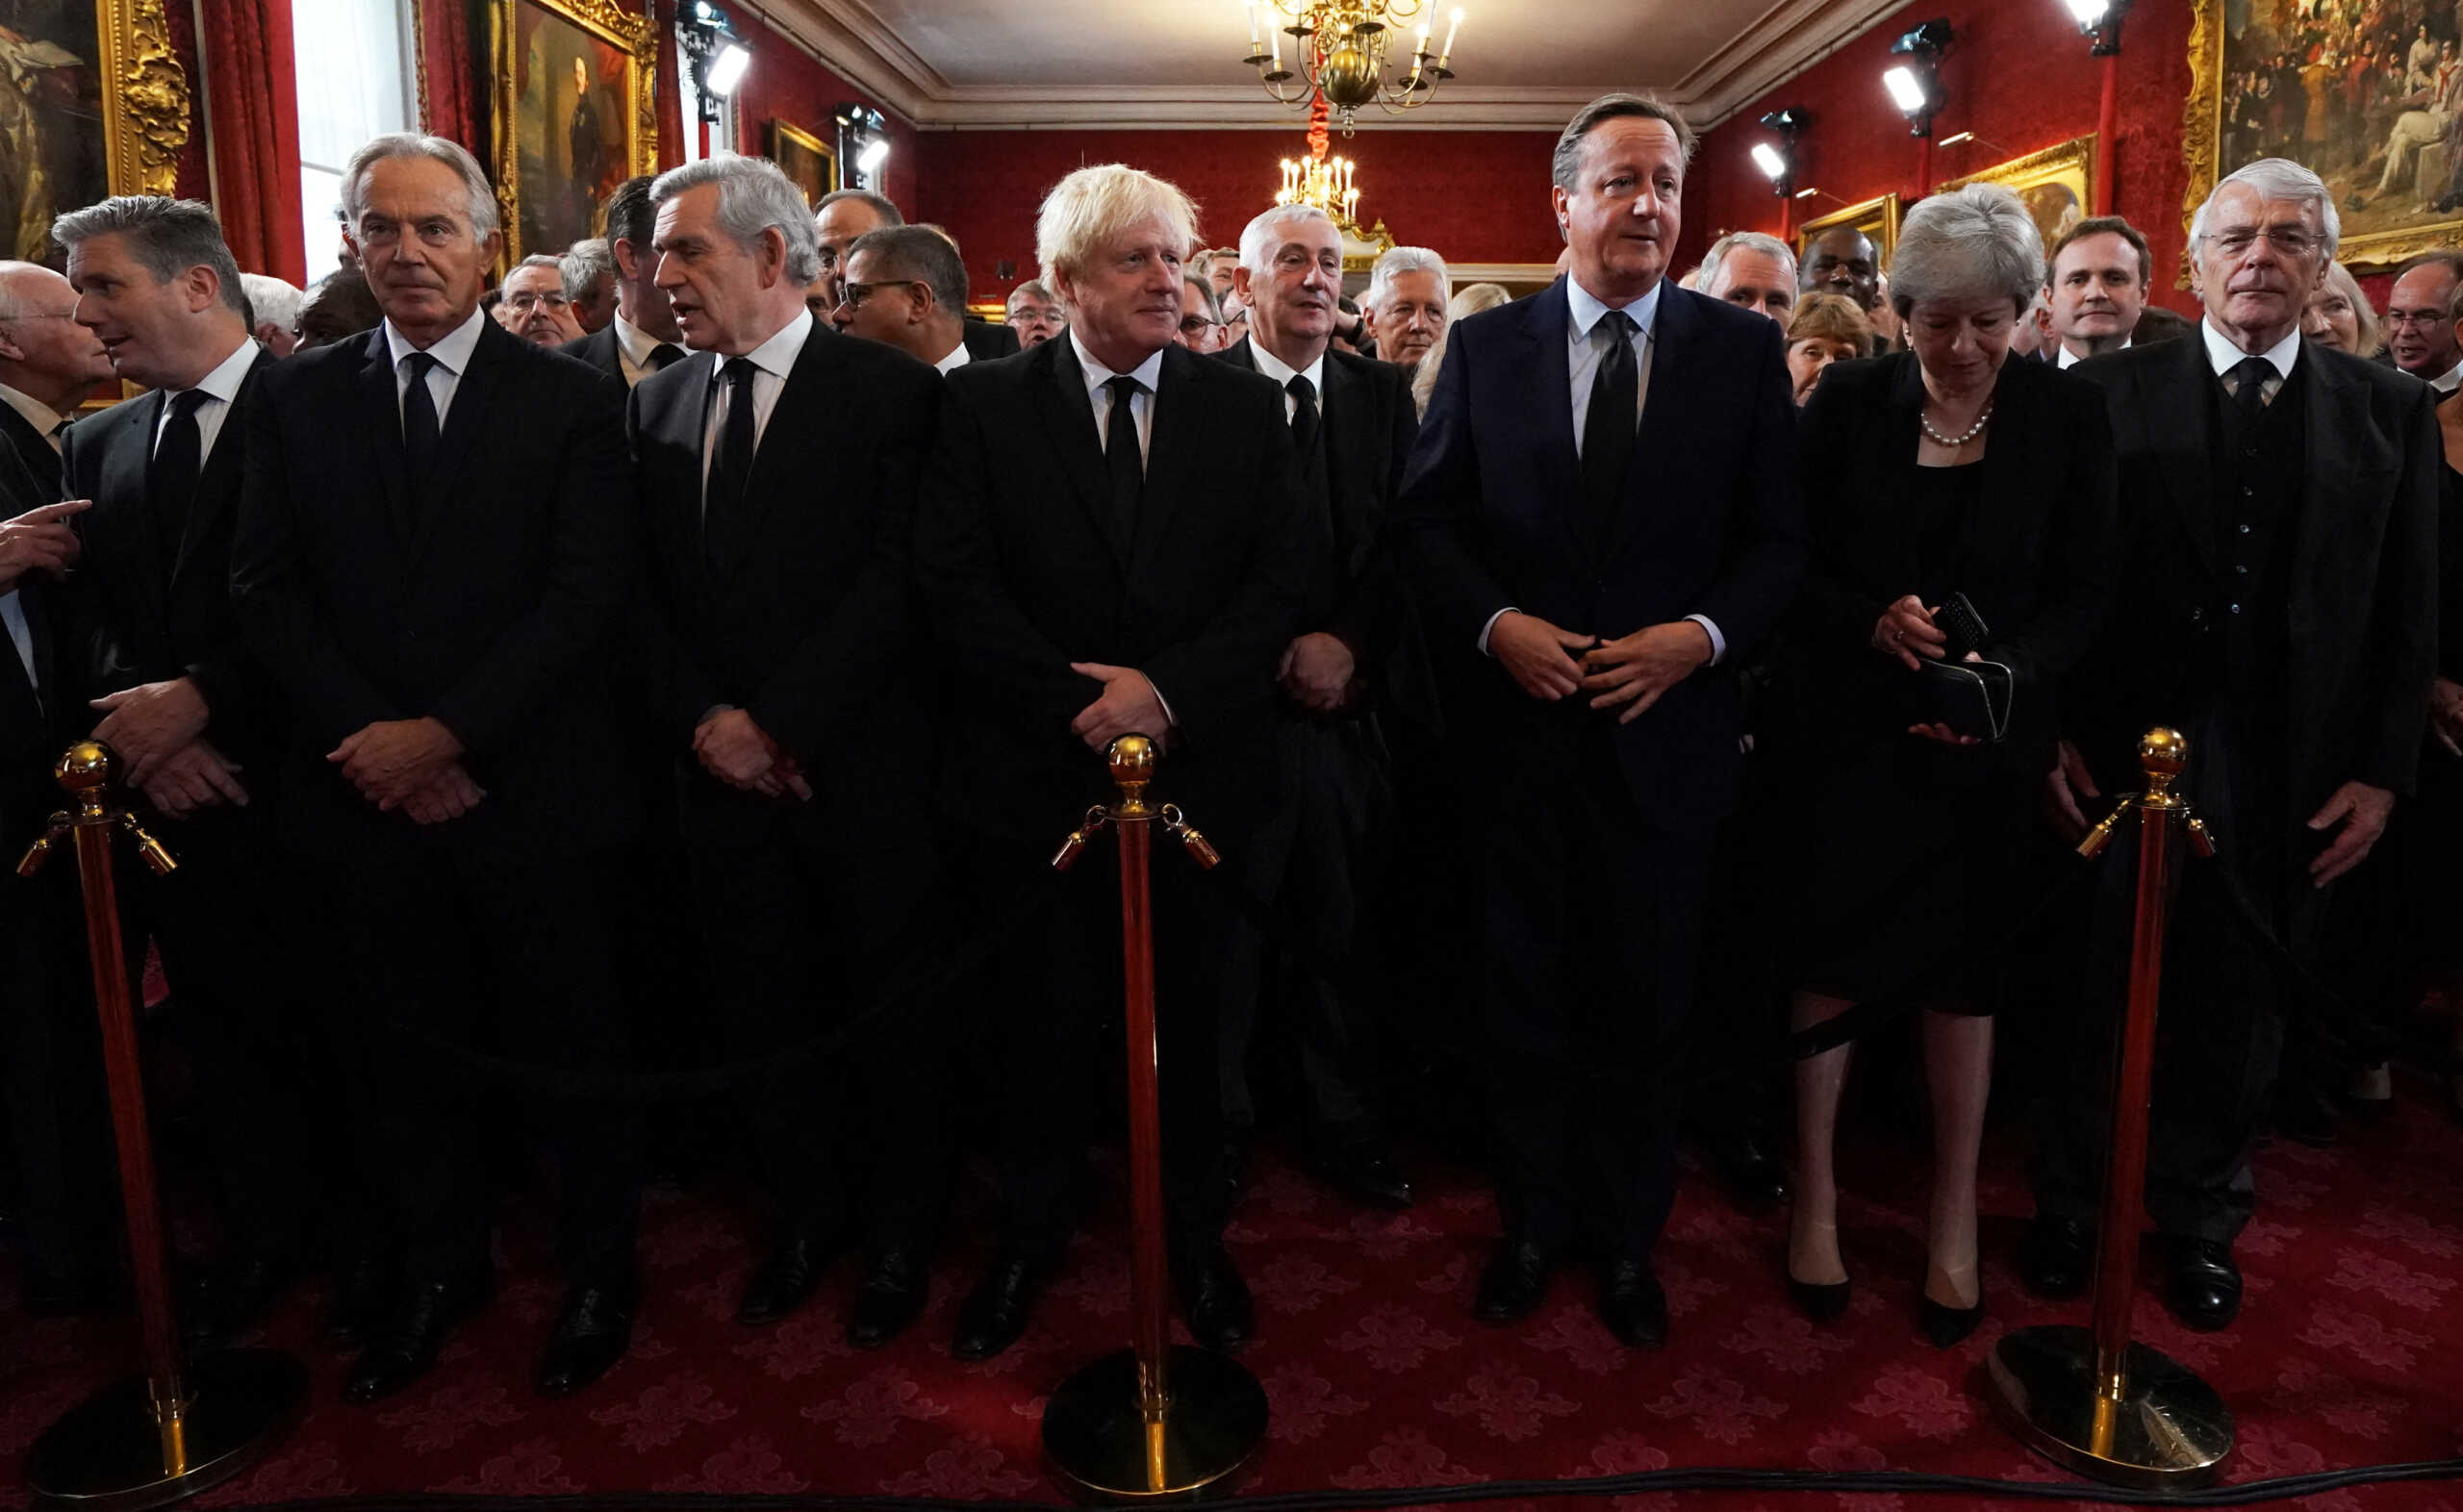 Βασιλιάς Κάρολος: 6 πρώην πρωθυπουργοί της Βρετανίας παρακολούθησαν την ανακήρυξή του